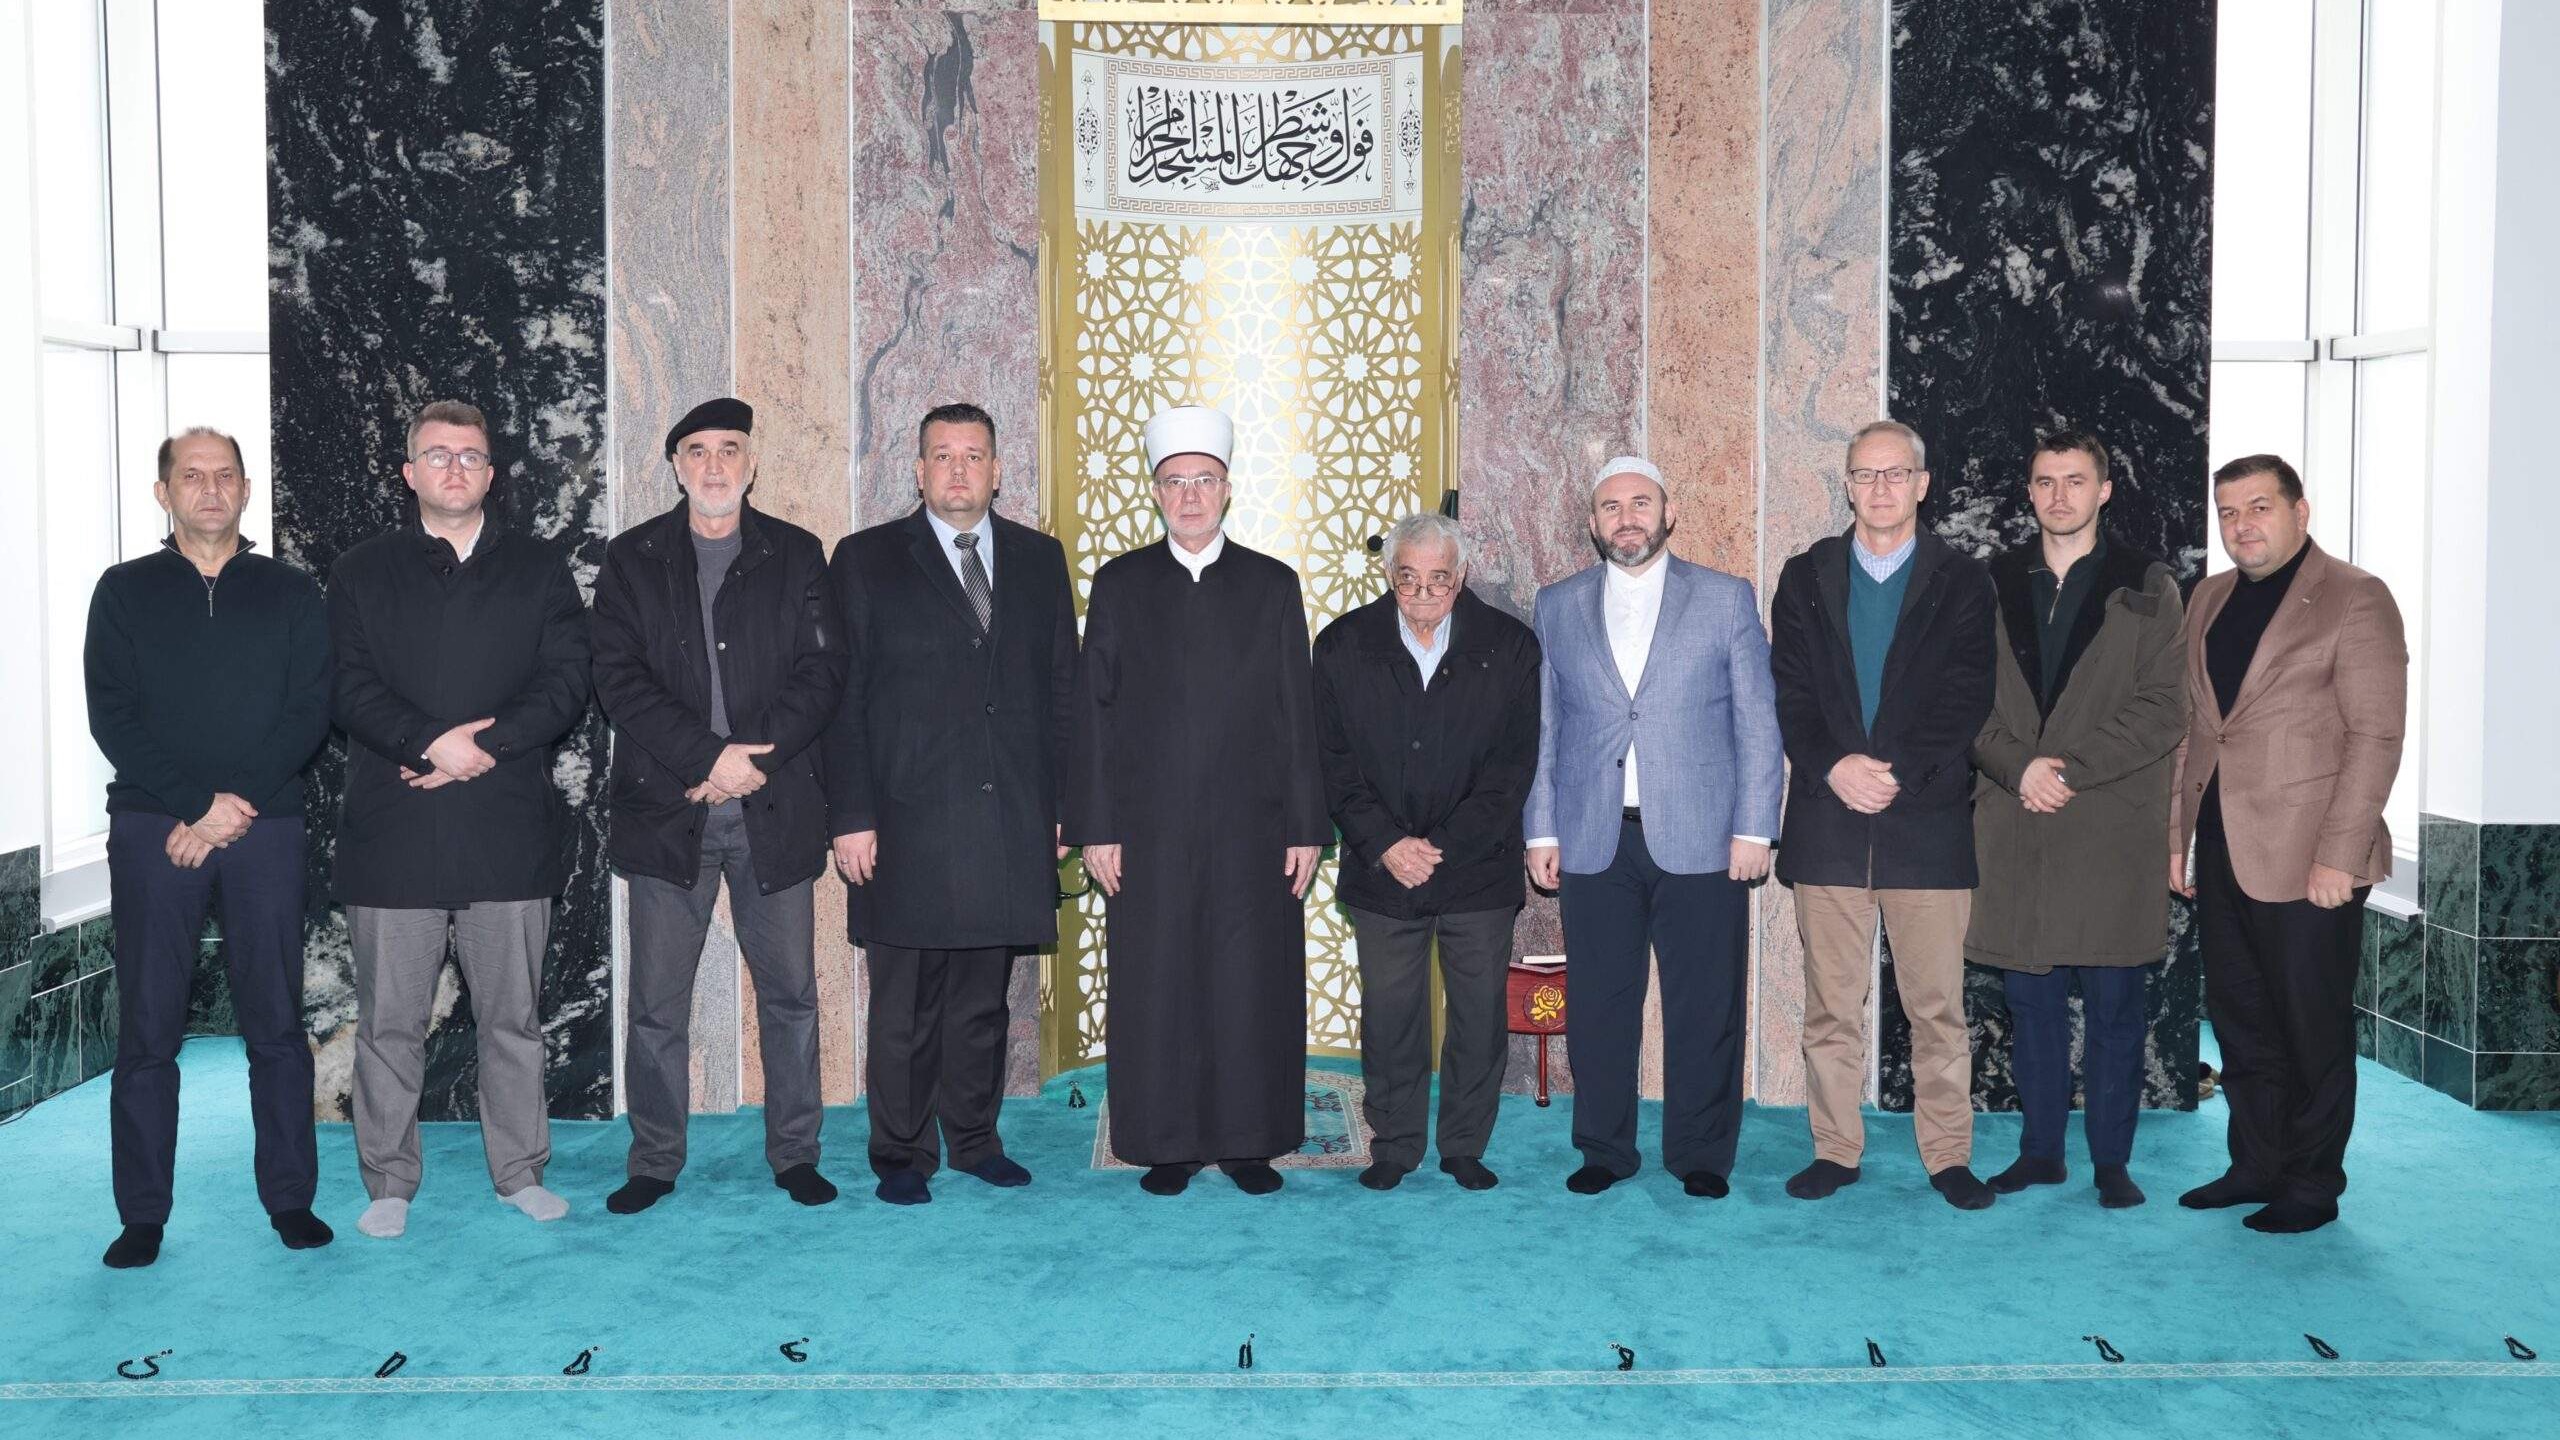 Džamija "Kralj Abdullah" u Tuzli od posebnog značaja za Muftijstvo tuzlansko i MIZ Tuzla 